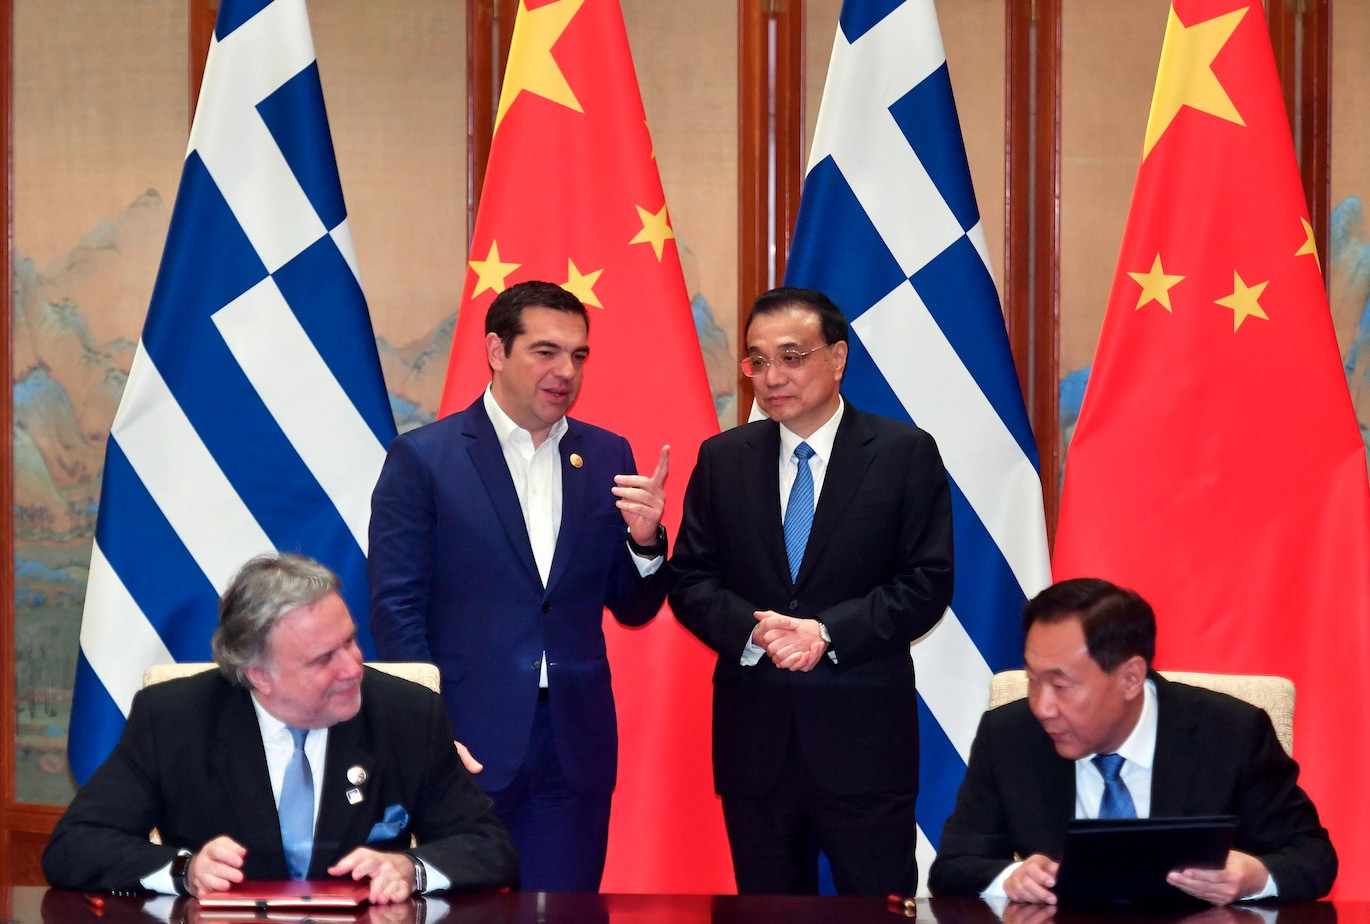 Ανοίγει ο δρόμος για την εγκατάσταση κινεζικής τράπεζας στην Ελλάδα